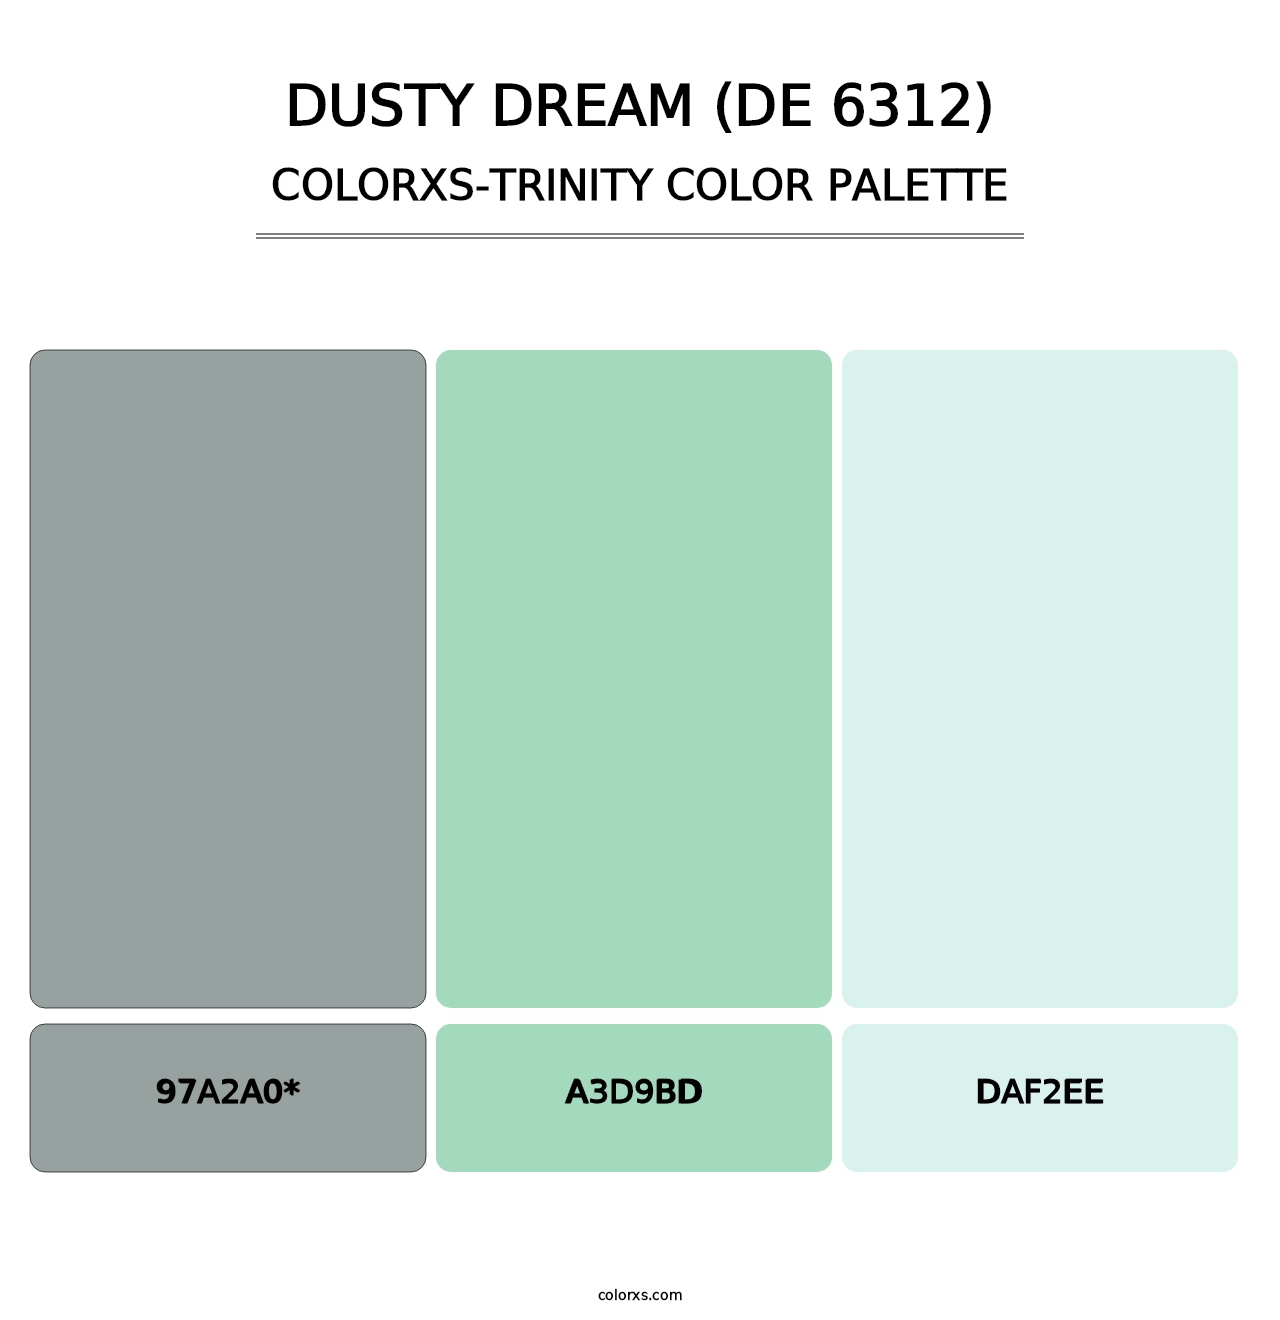 Dusty Dream (DE 6312) - Colorxs Trinity Palette